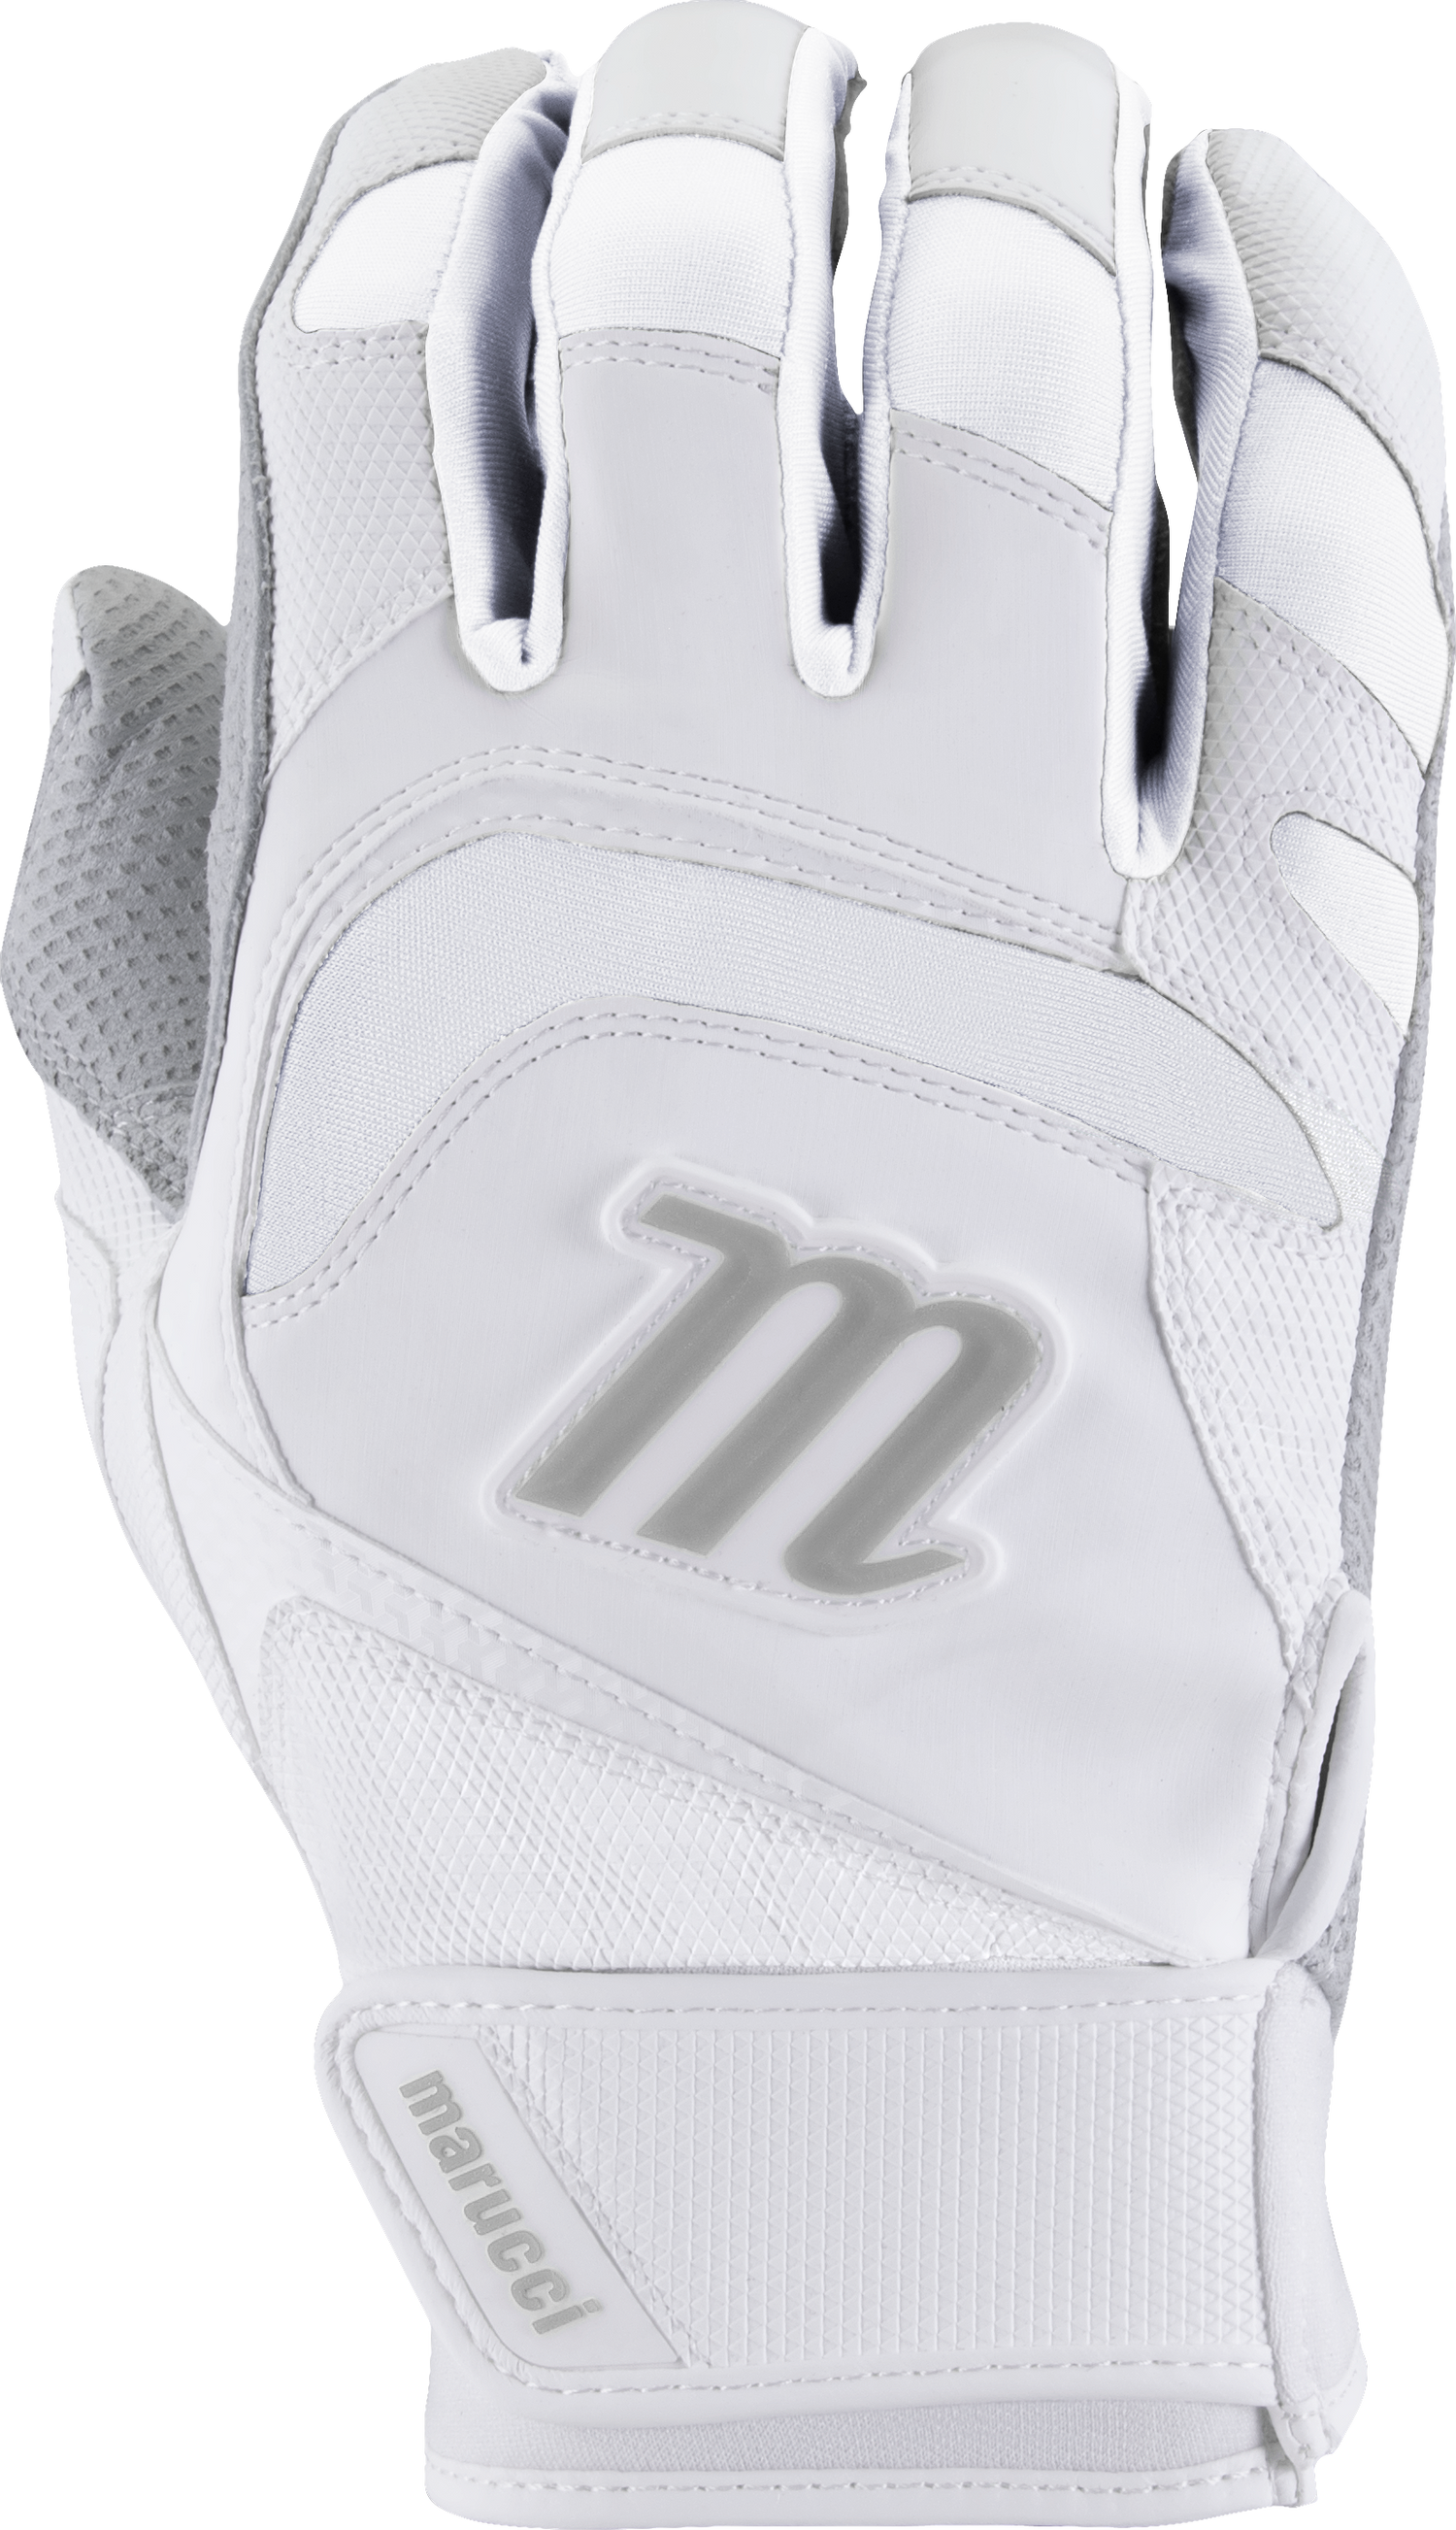 Signature Batting Gloves V4 - White